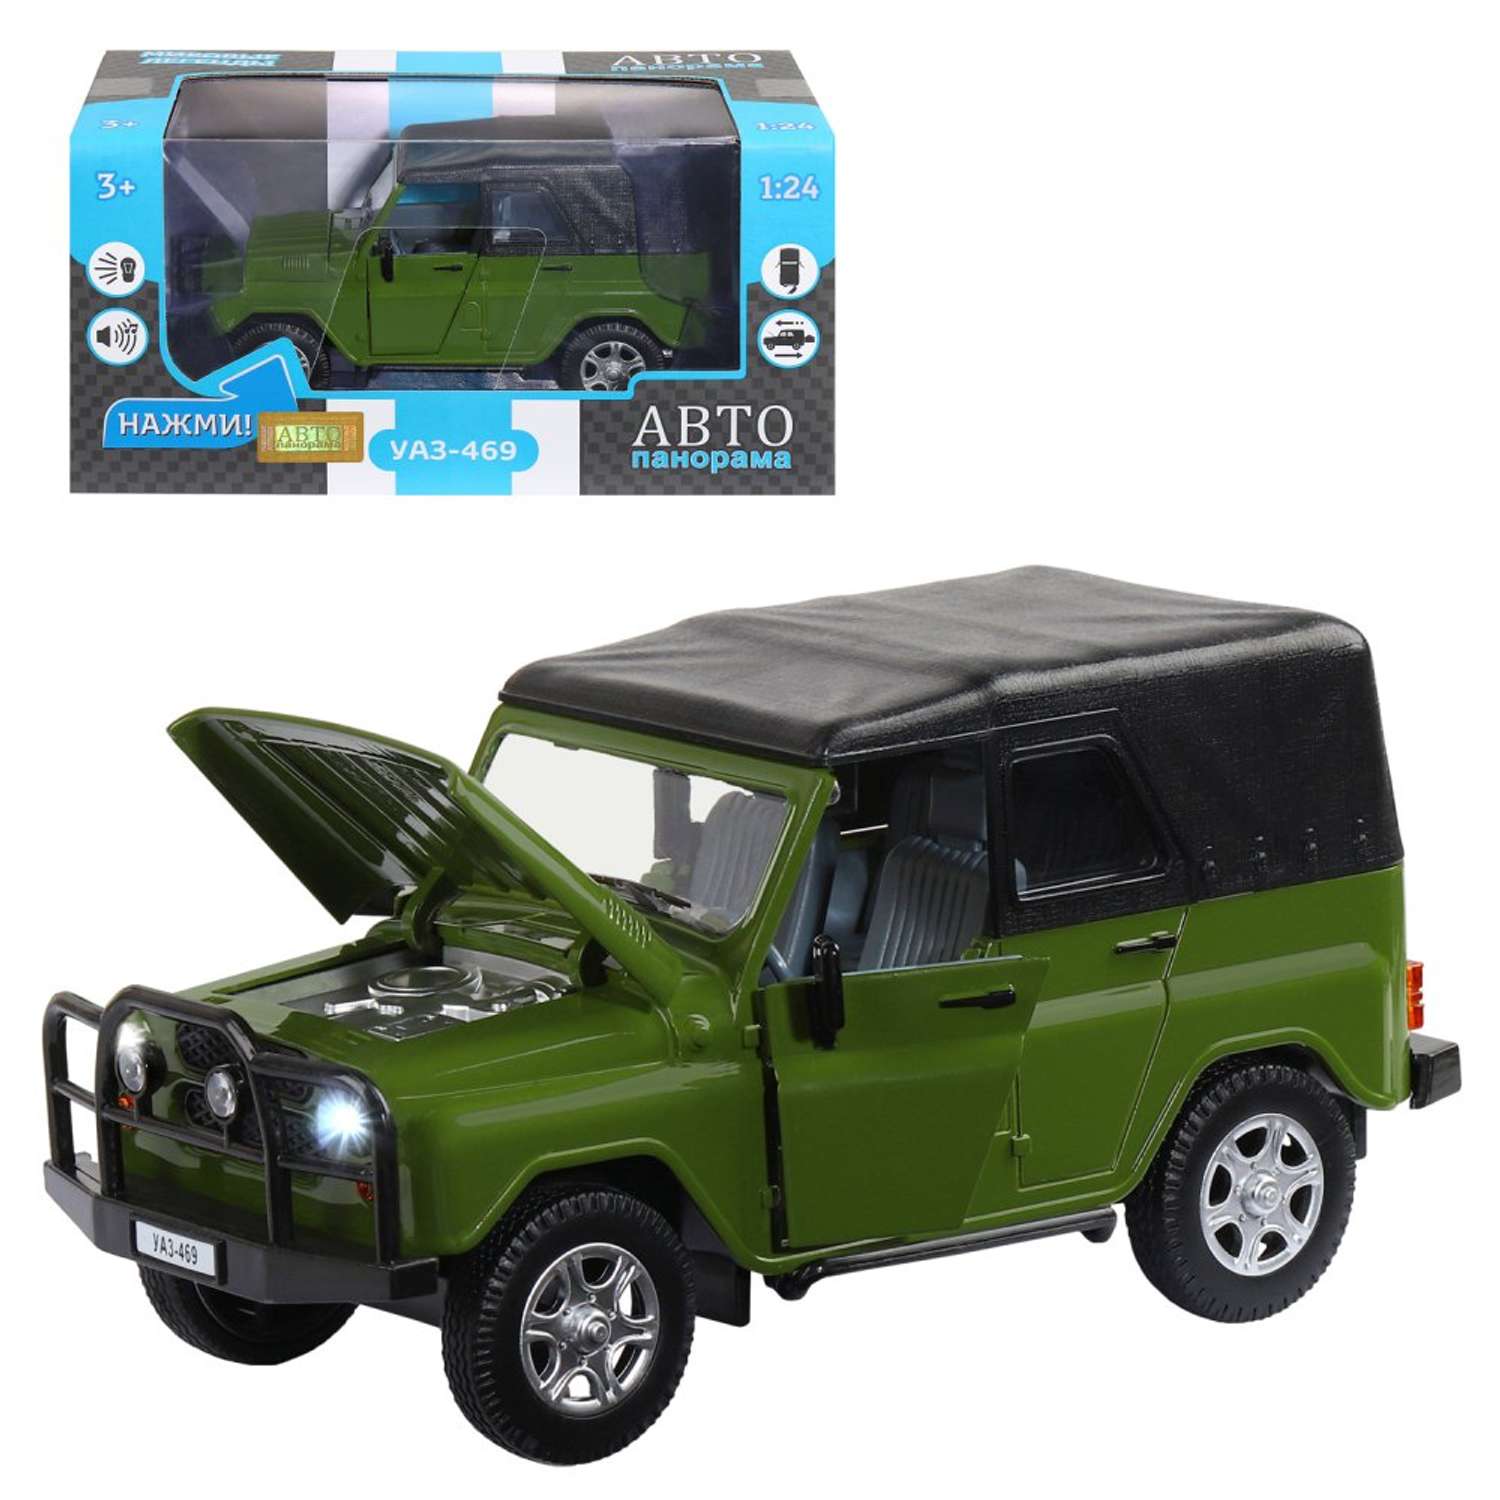 Машинка металлическая АВТОпанорама игрушка детская УАЗ-469 1:24 зеленый JB1200214 - фото 4